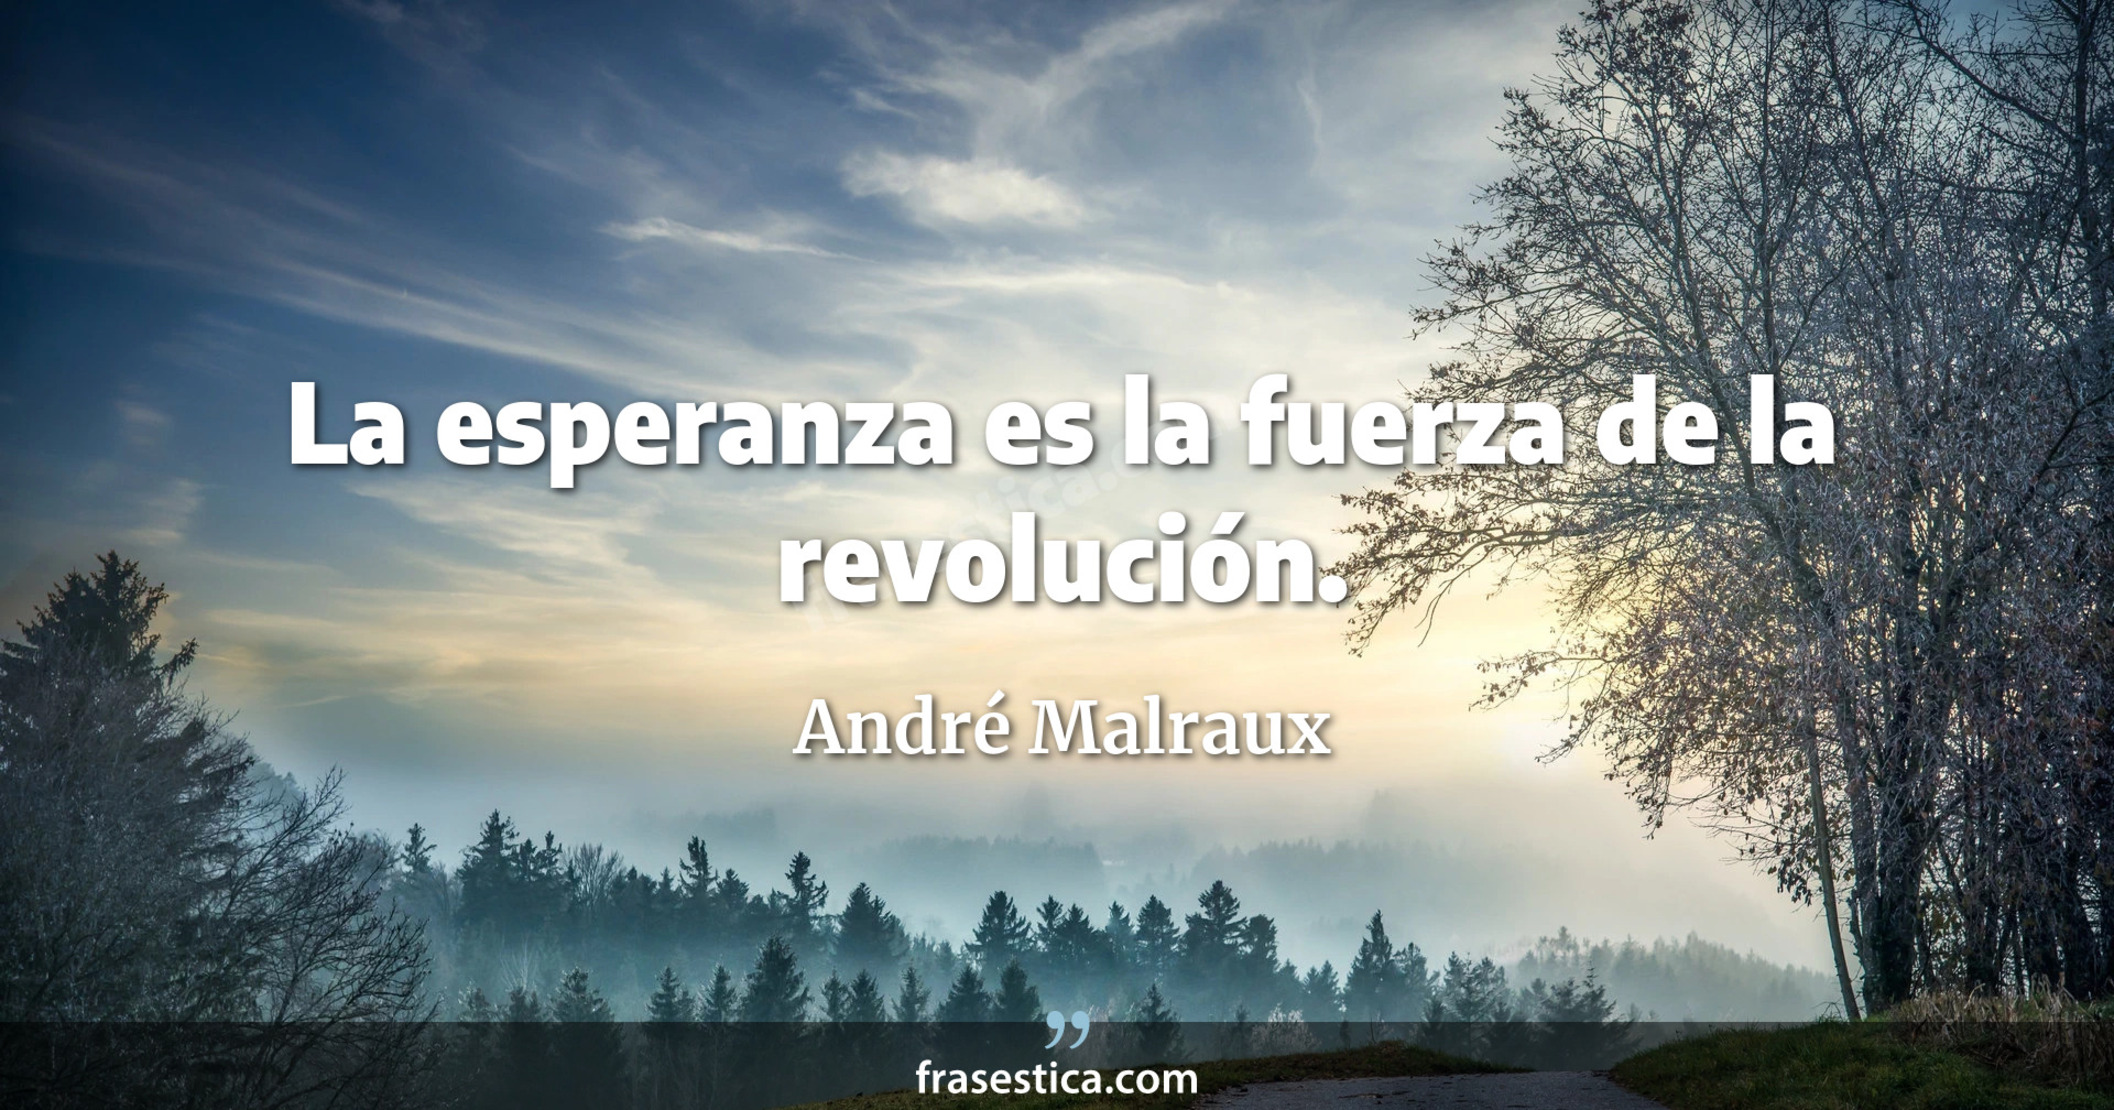 La esperanza es la fuerza de la revolución. - André Malraux